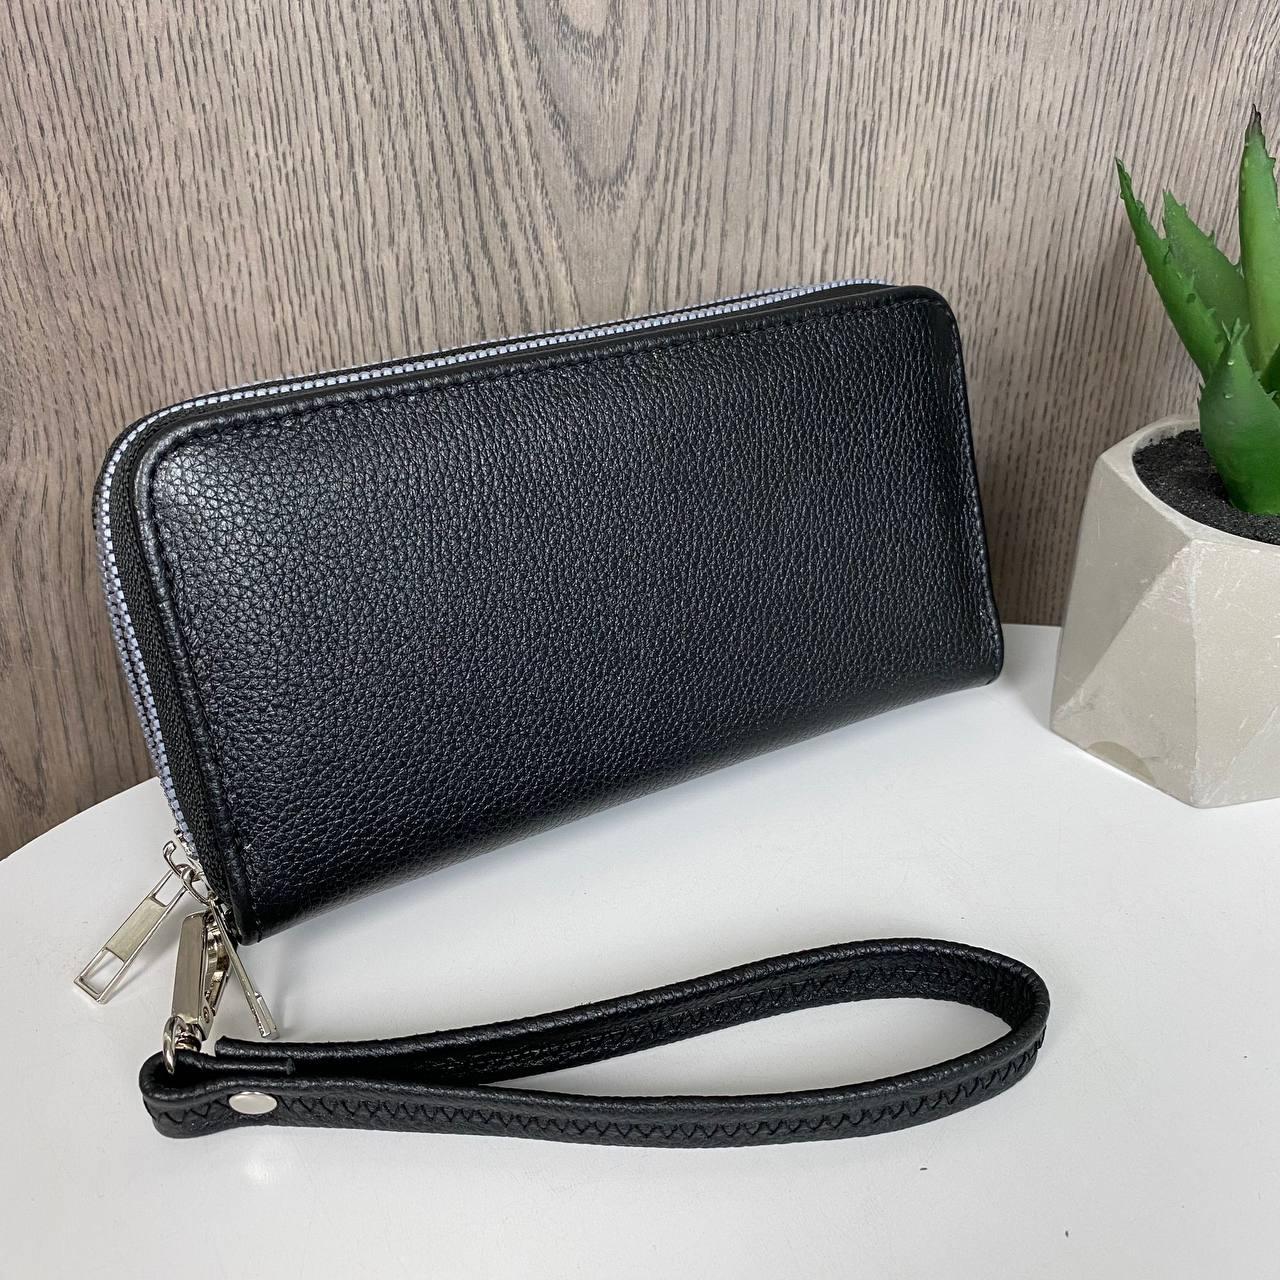 Жіночий шкіряний кланч гаманець стильний і модний ✔ Клатч-кошелек з натуральної шкіри чорний на блискавиці